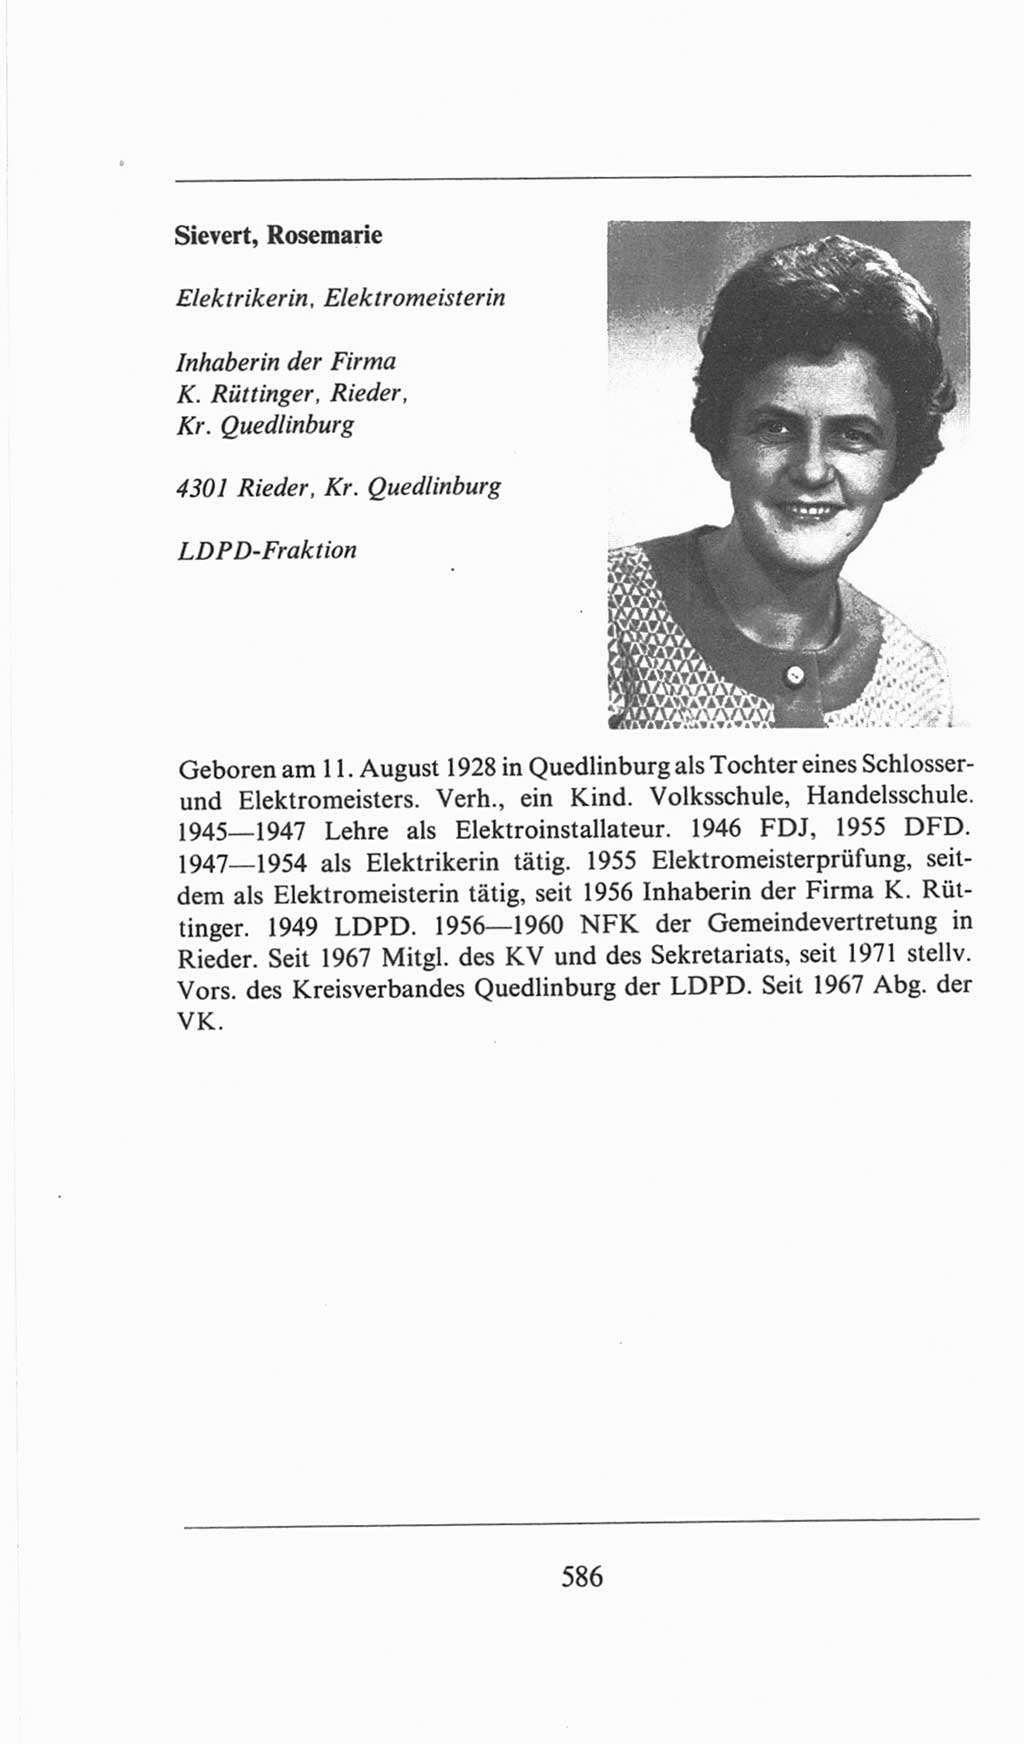 Volkskammer (VK) der Deutschen Demokratischen Republik (DDR), 6. Wahlperiode 1971-1976, Seite 586 (VK. DDR 6. WP. 1971-1976, S. 586)